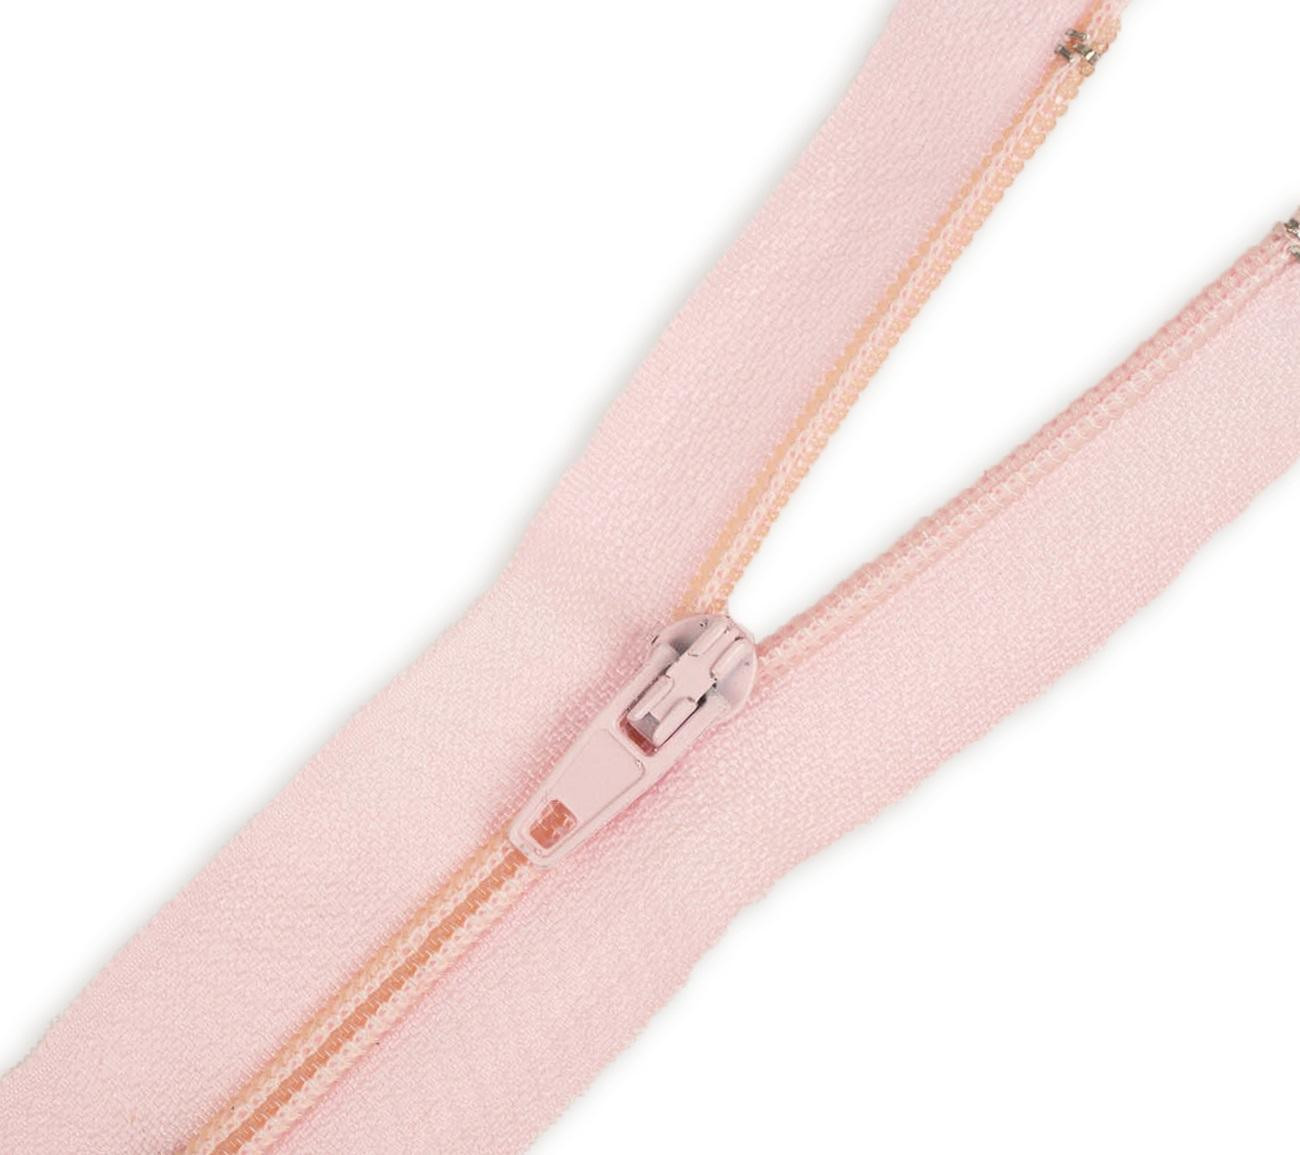 Coil zipper 60cm Open-end - muted pink (BP)